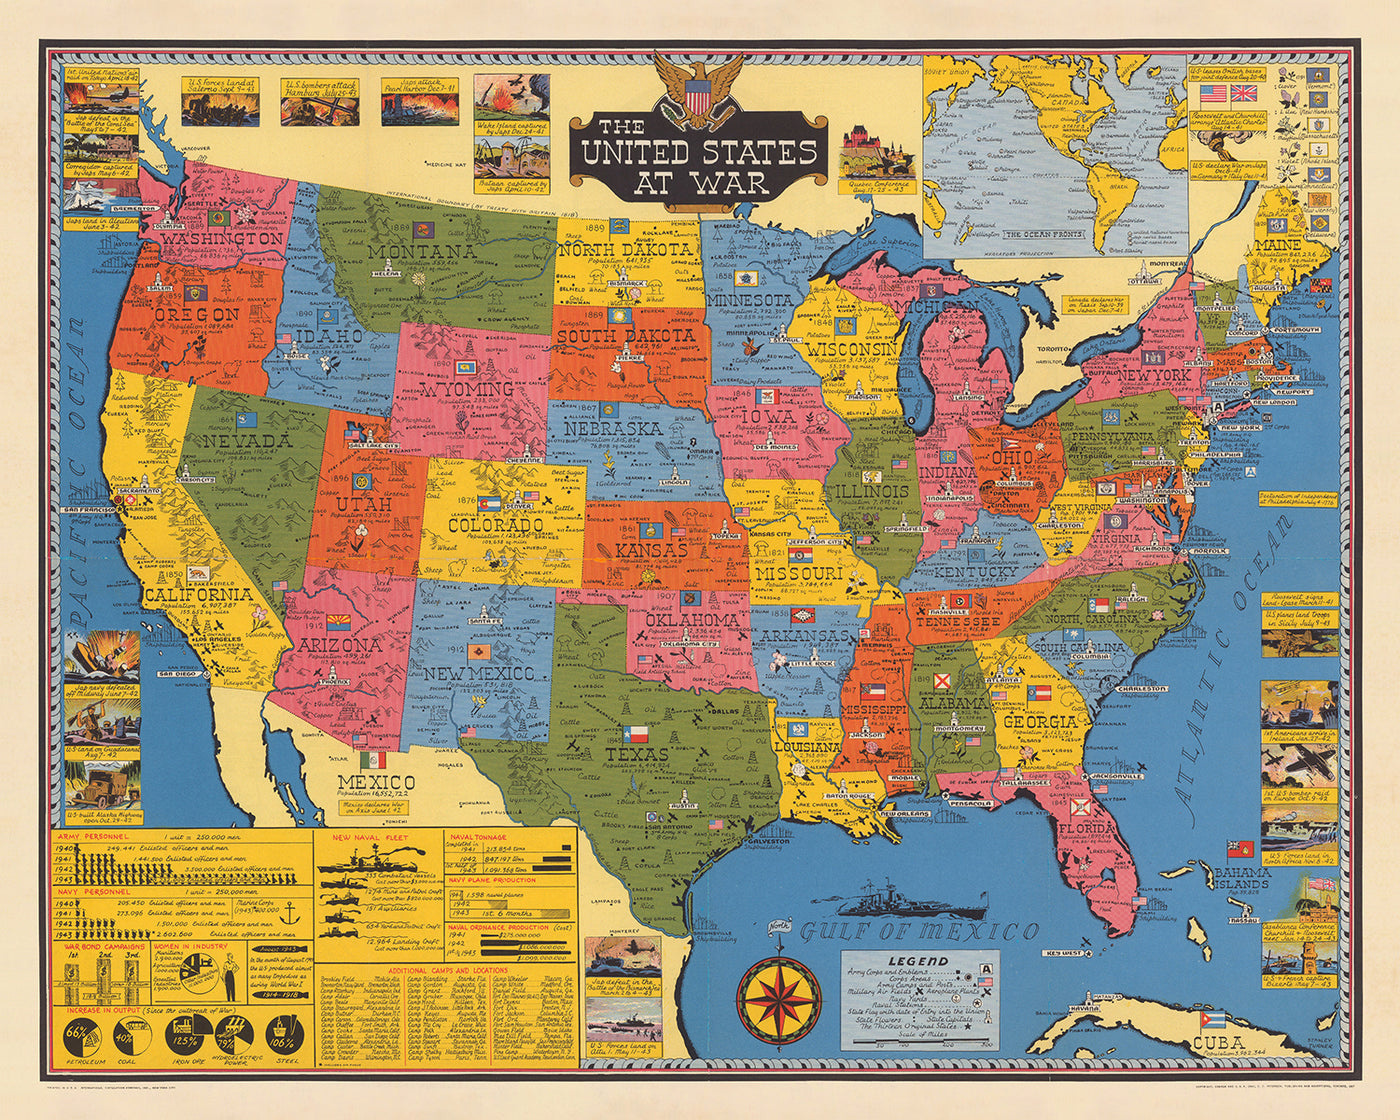 Mapa antiguo de Estados Unidos en guerra por Stanley Turner, 1943: Carta nacional del ejército y la marina de la Segunda Guerra Mundial